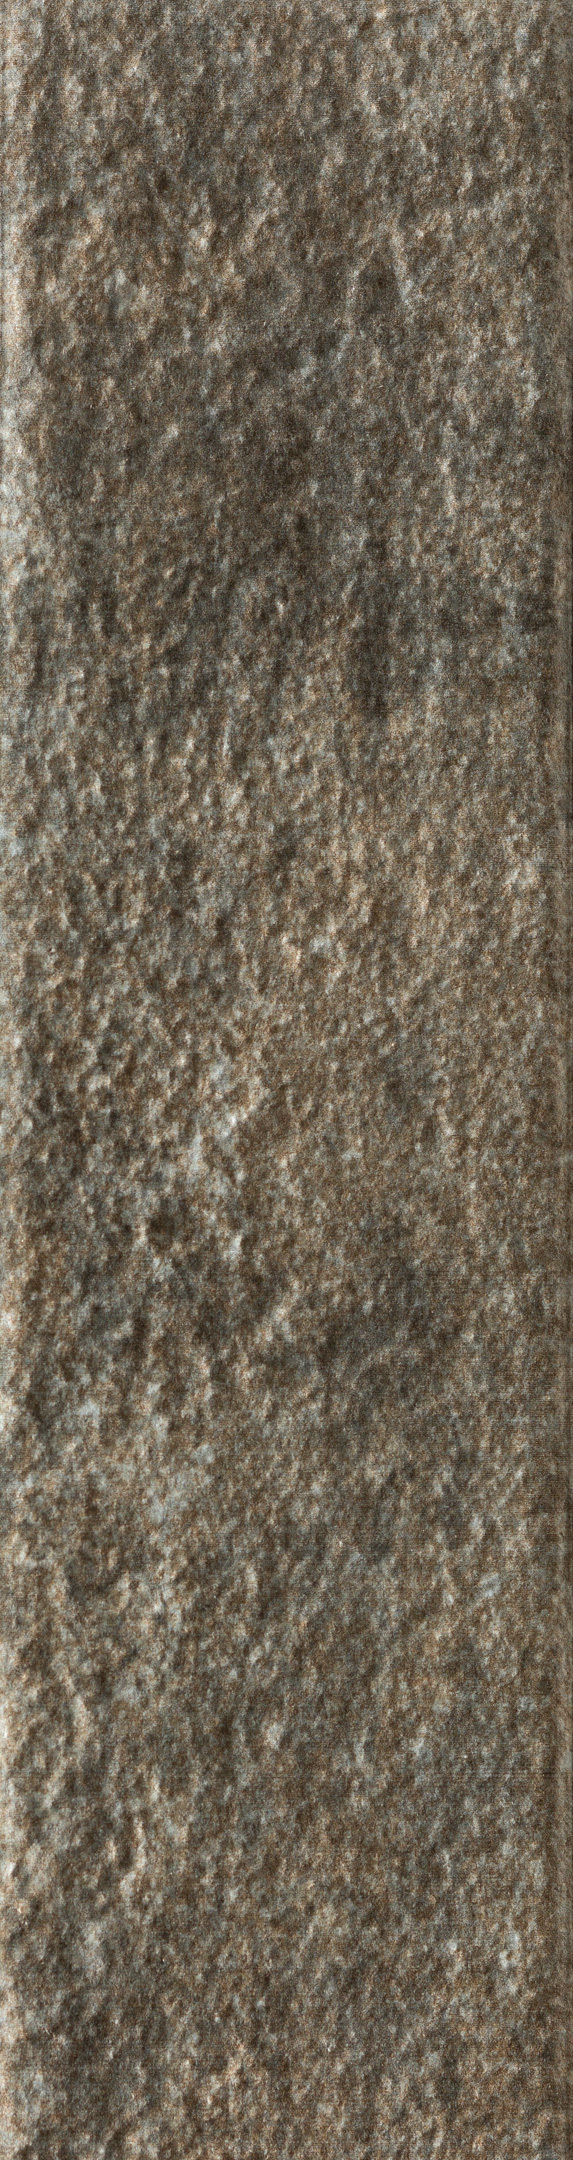 фото Клинкерная плитка керамин теннесси 1т серая 24,5х6,5 см (34 шт.=0,54 кв.м)